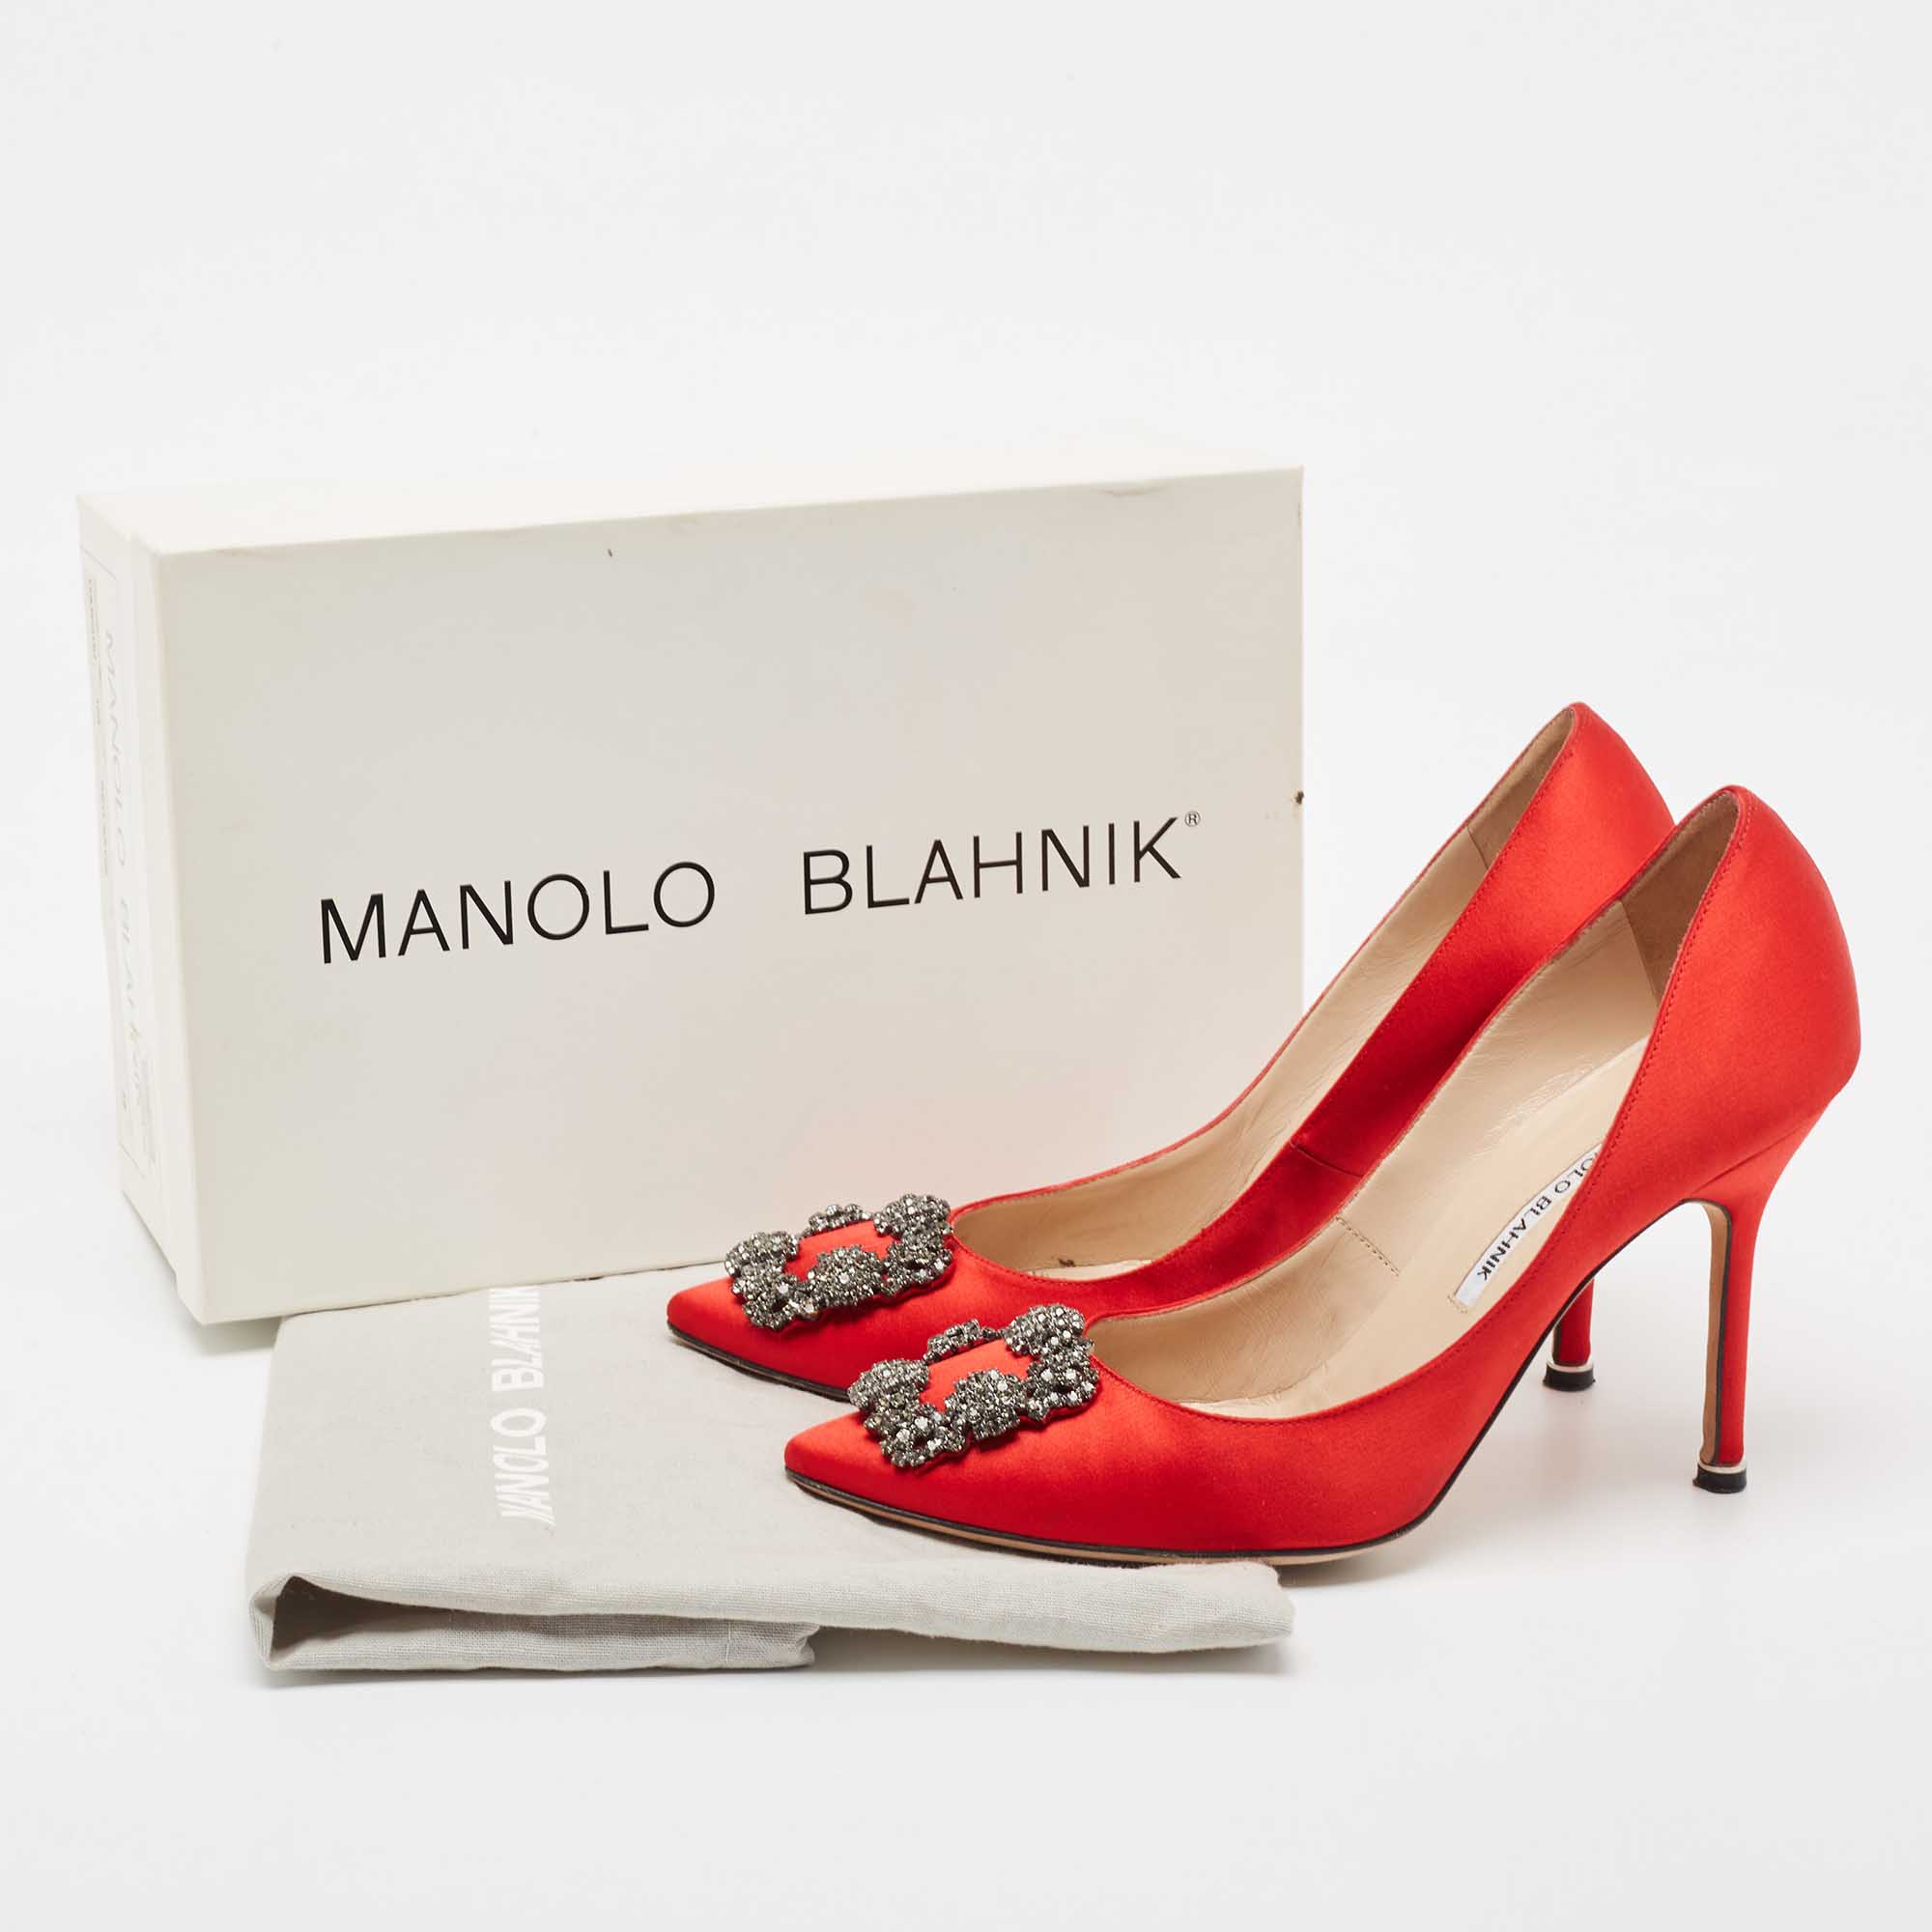 Manolo Blahnik Red Satin Hangisi Pumps Size 39